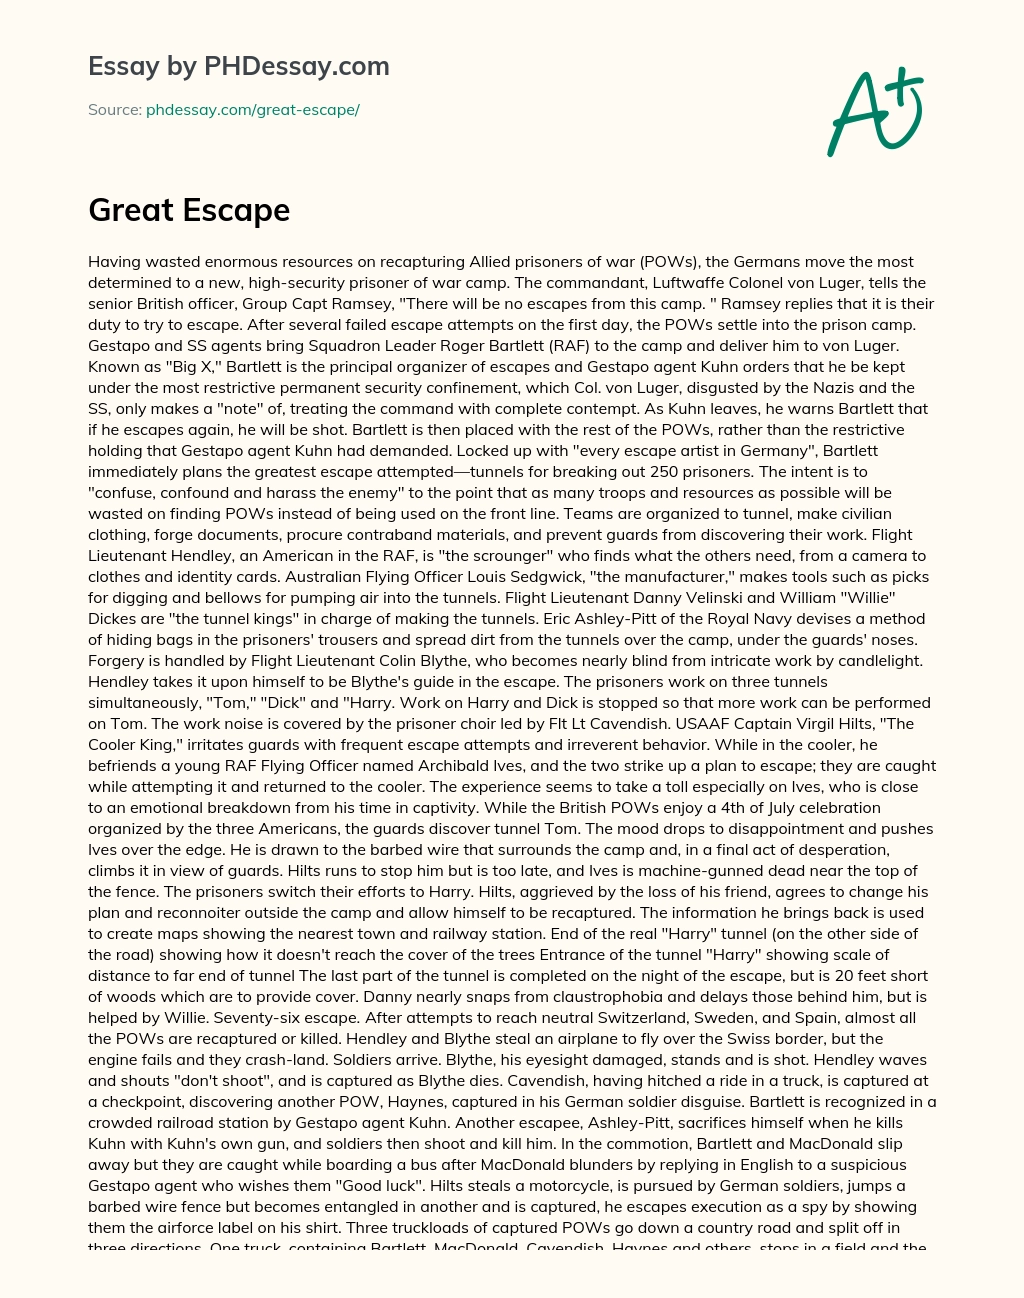 Great Escape essay